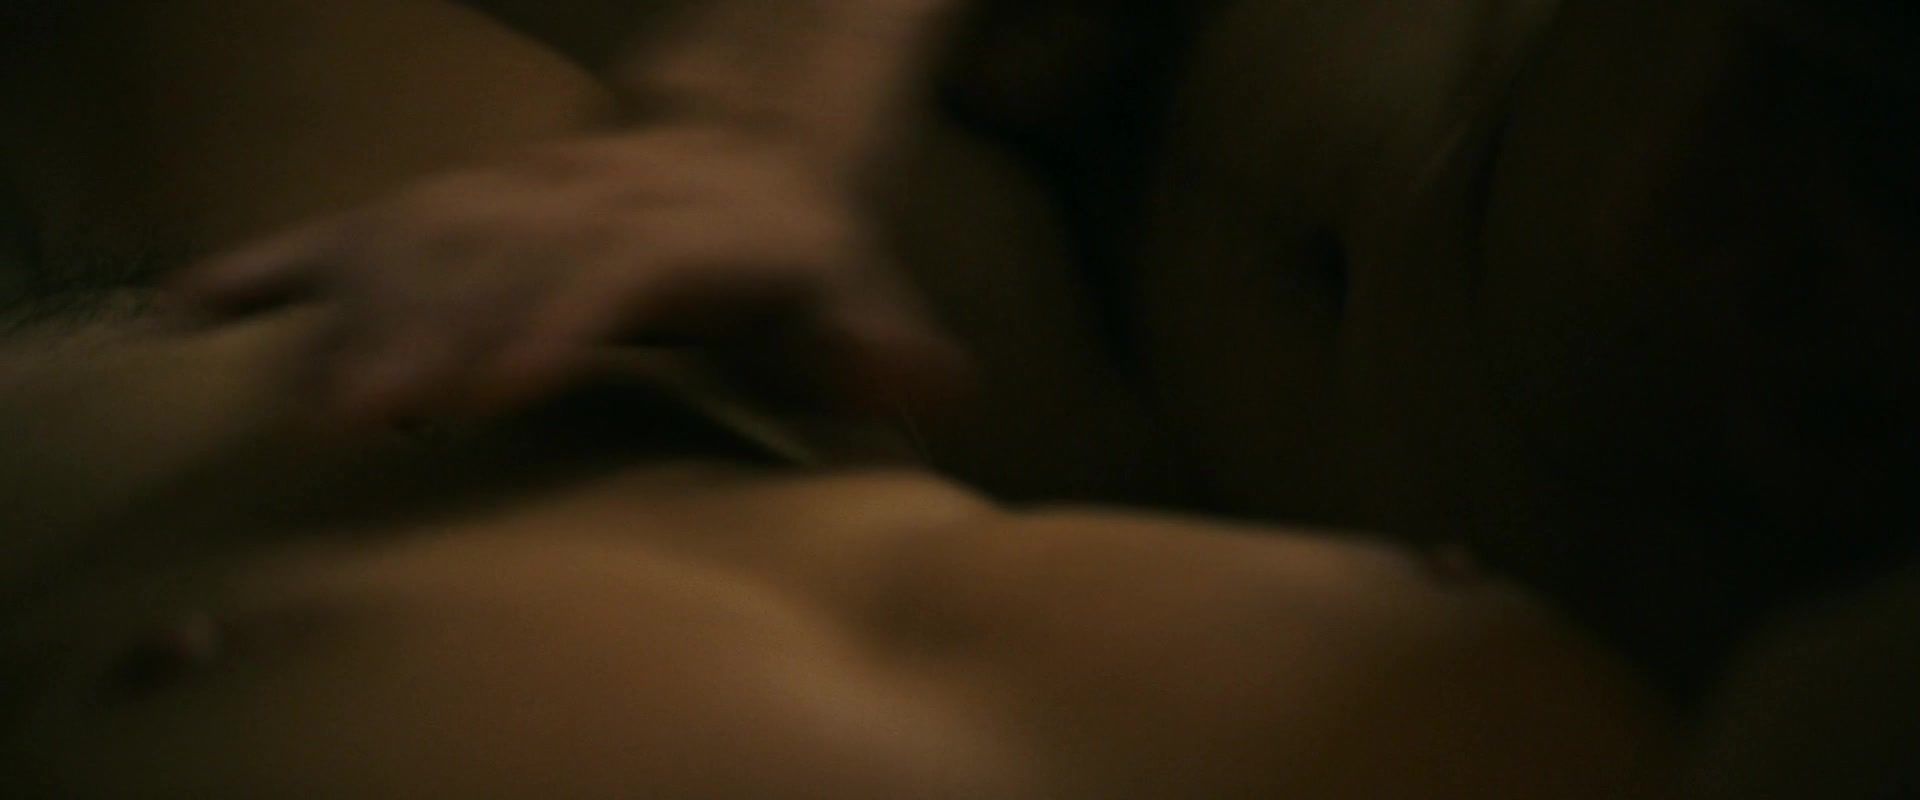 Massage Virginie Efira nude - Un Amour Impossible (2018) Ebony - 1